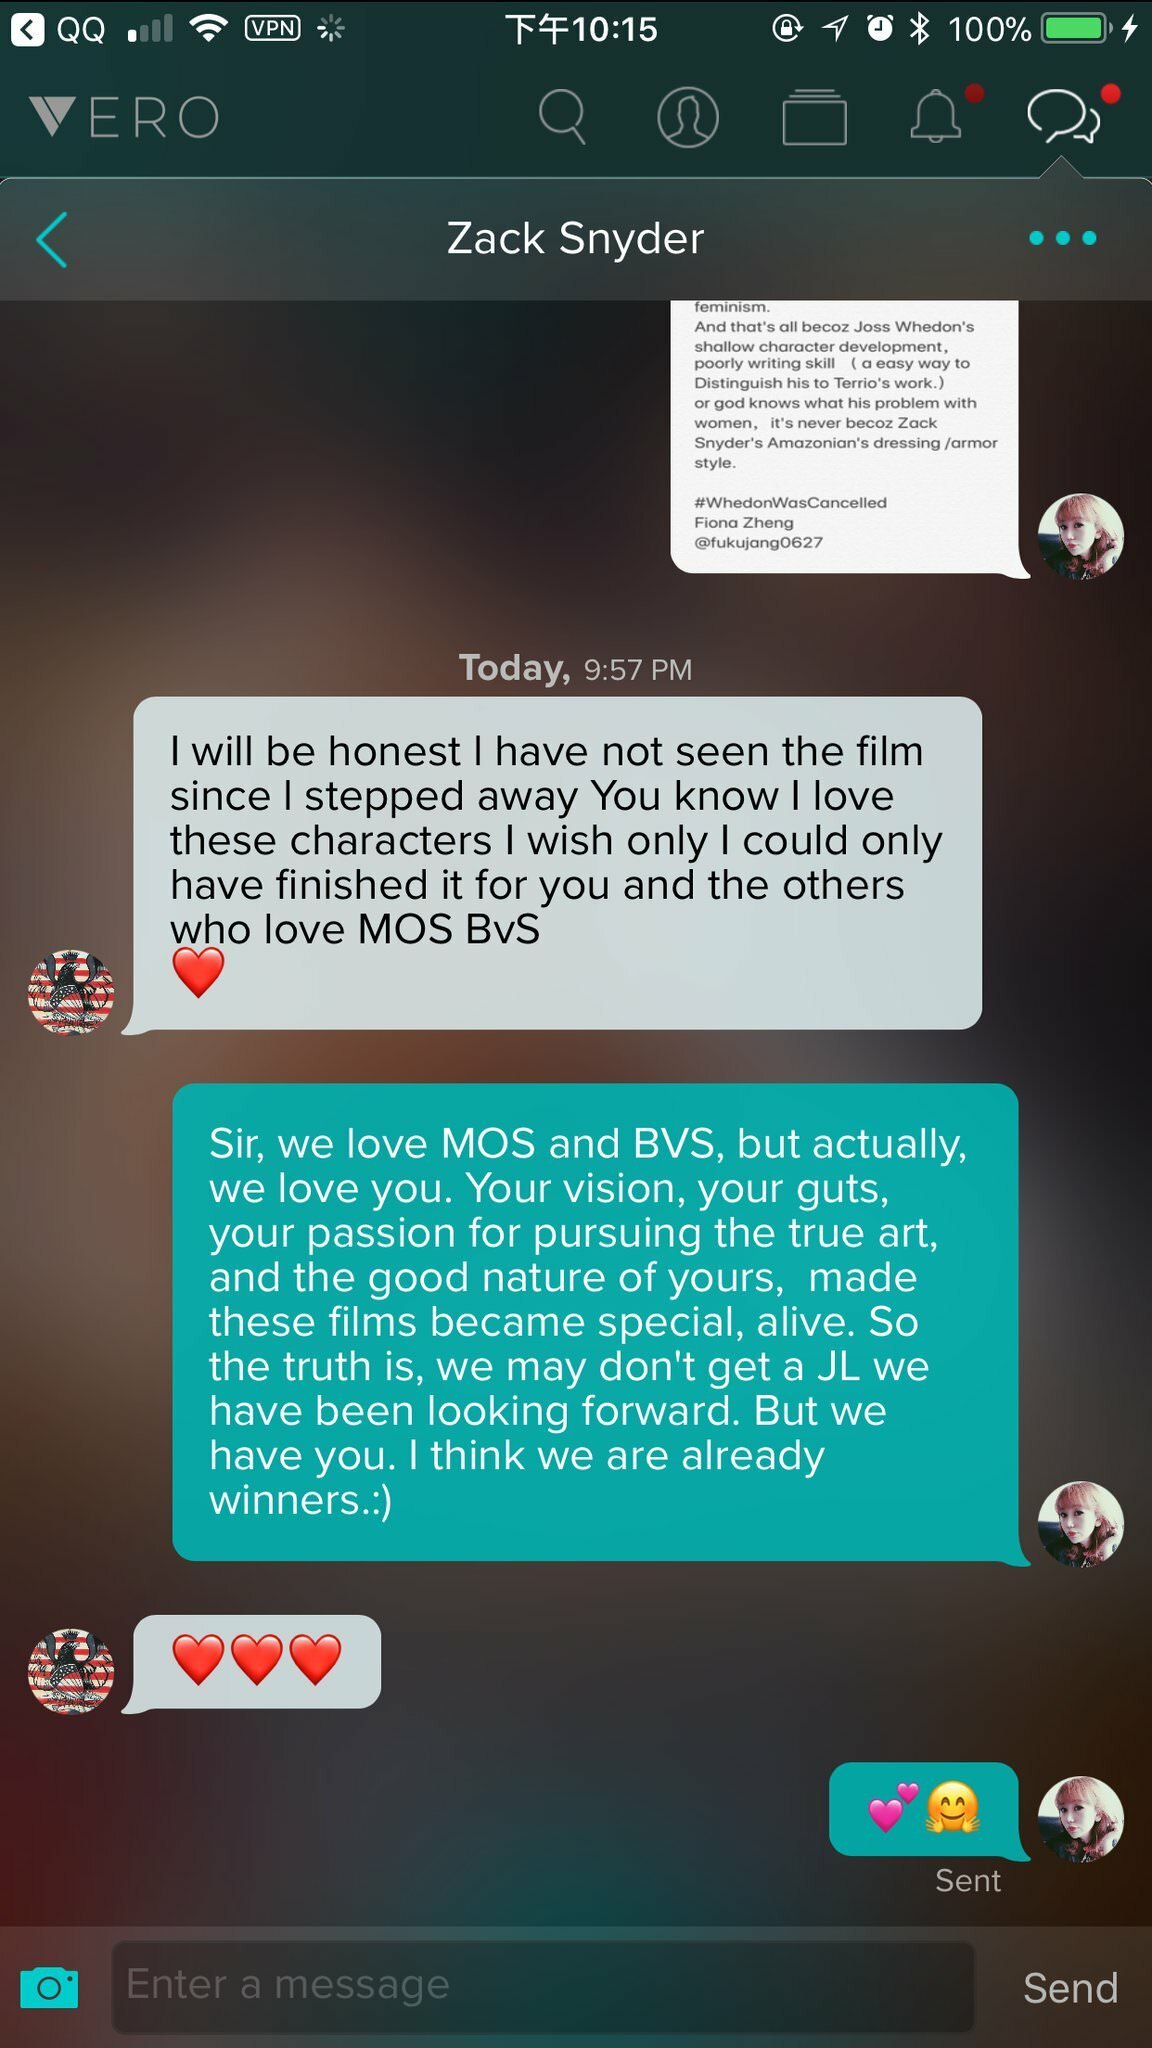 Zack Snyder risponde ad una fan sulla messaggistica di Vero e ammette di non aver visto il film